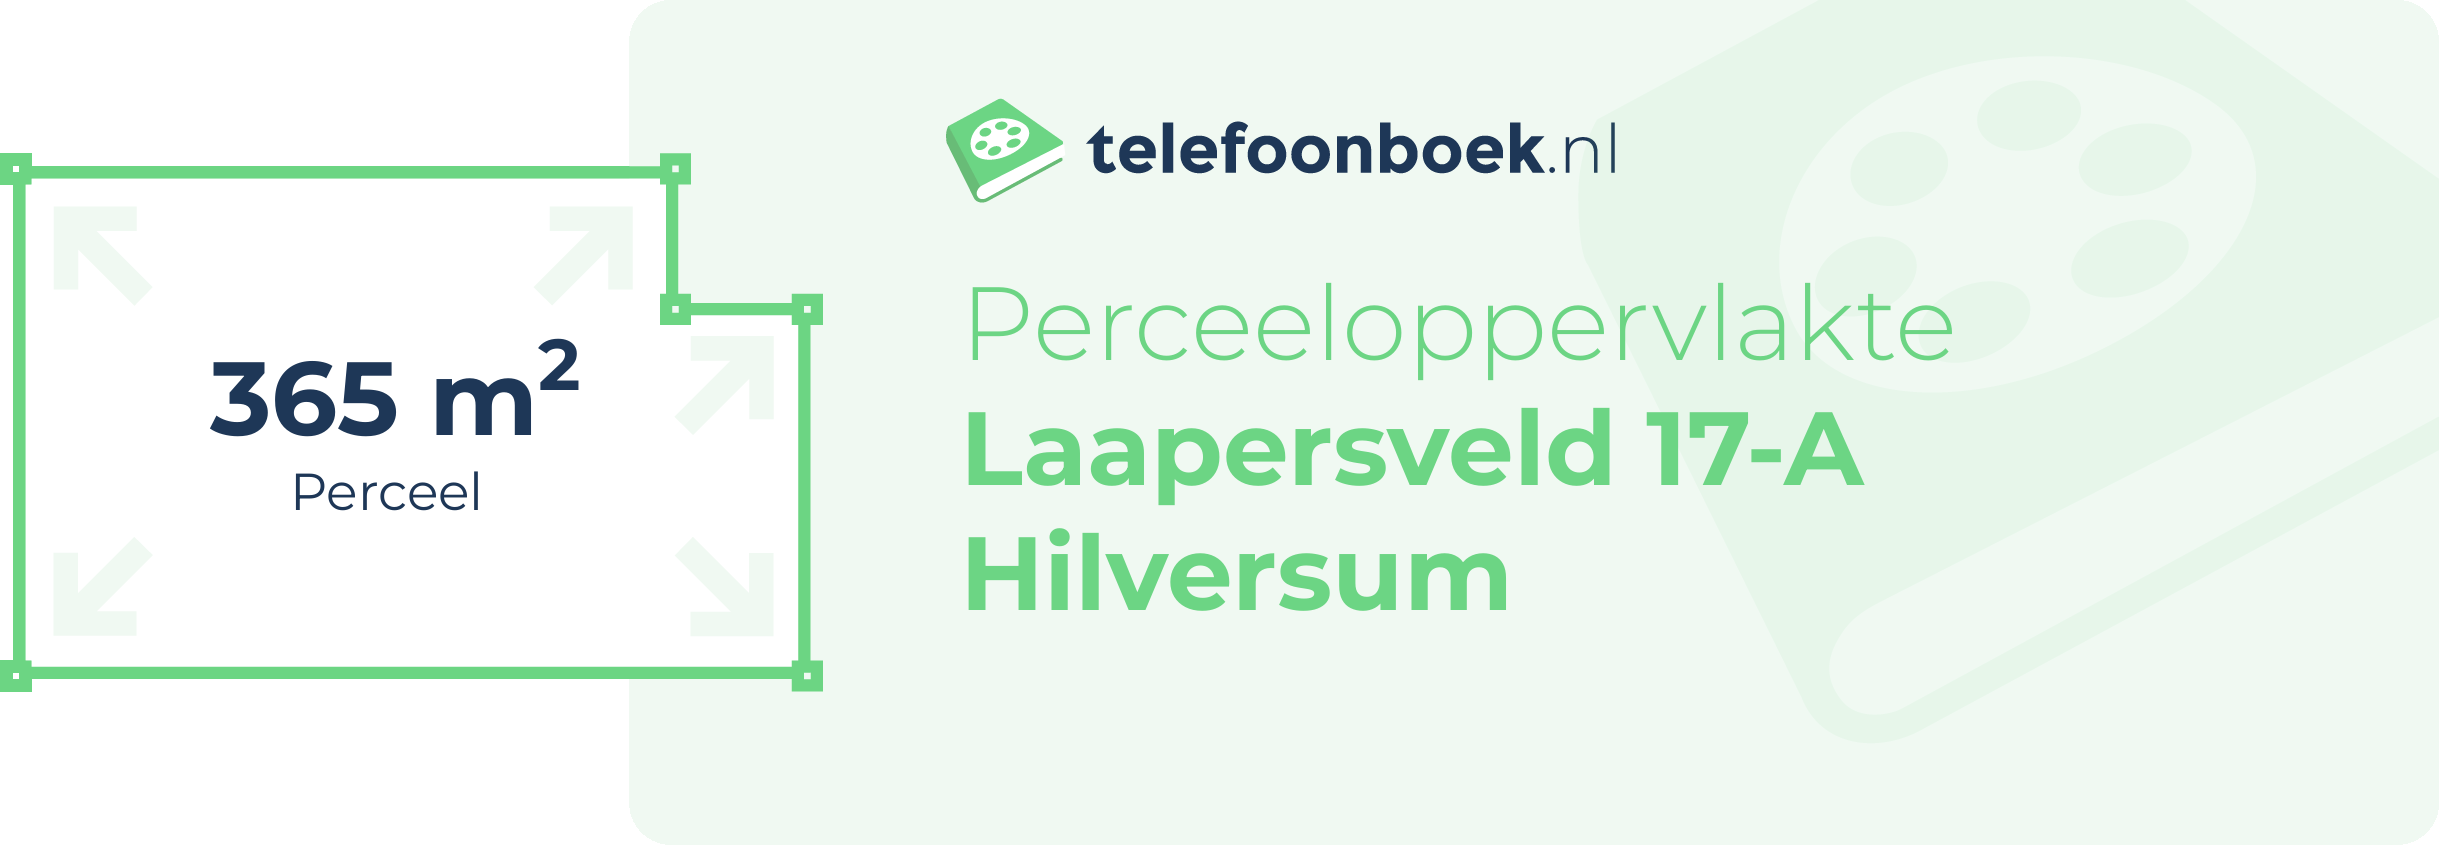 Perceeloppervlakte Laapersveld 17-A Hilversum